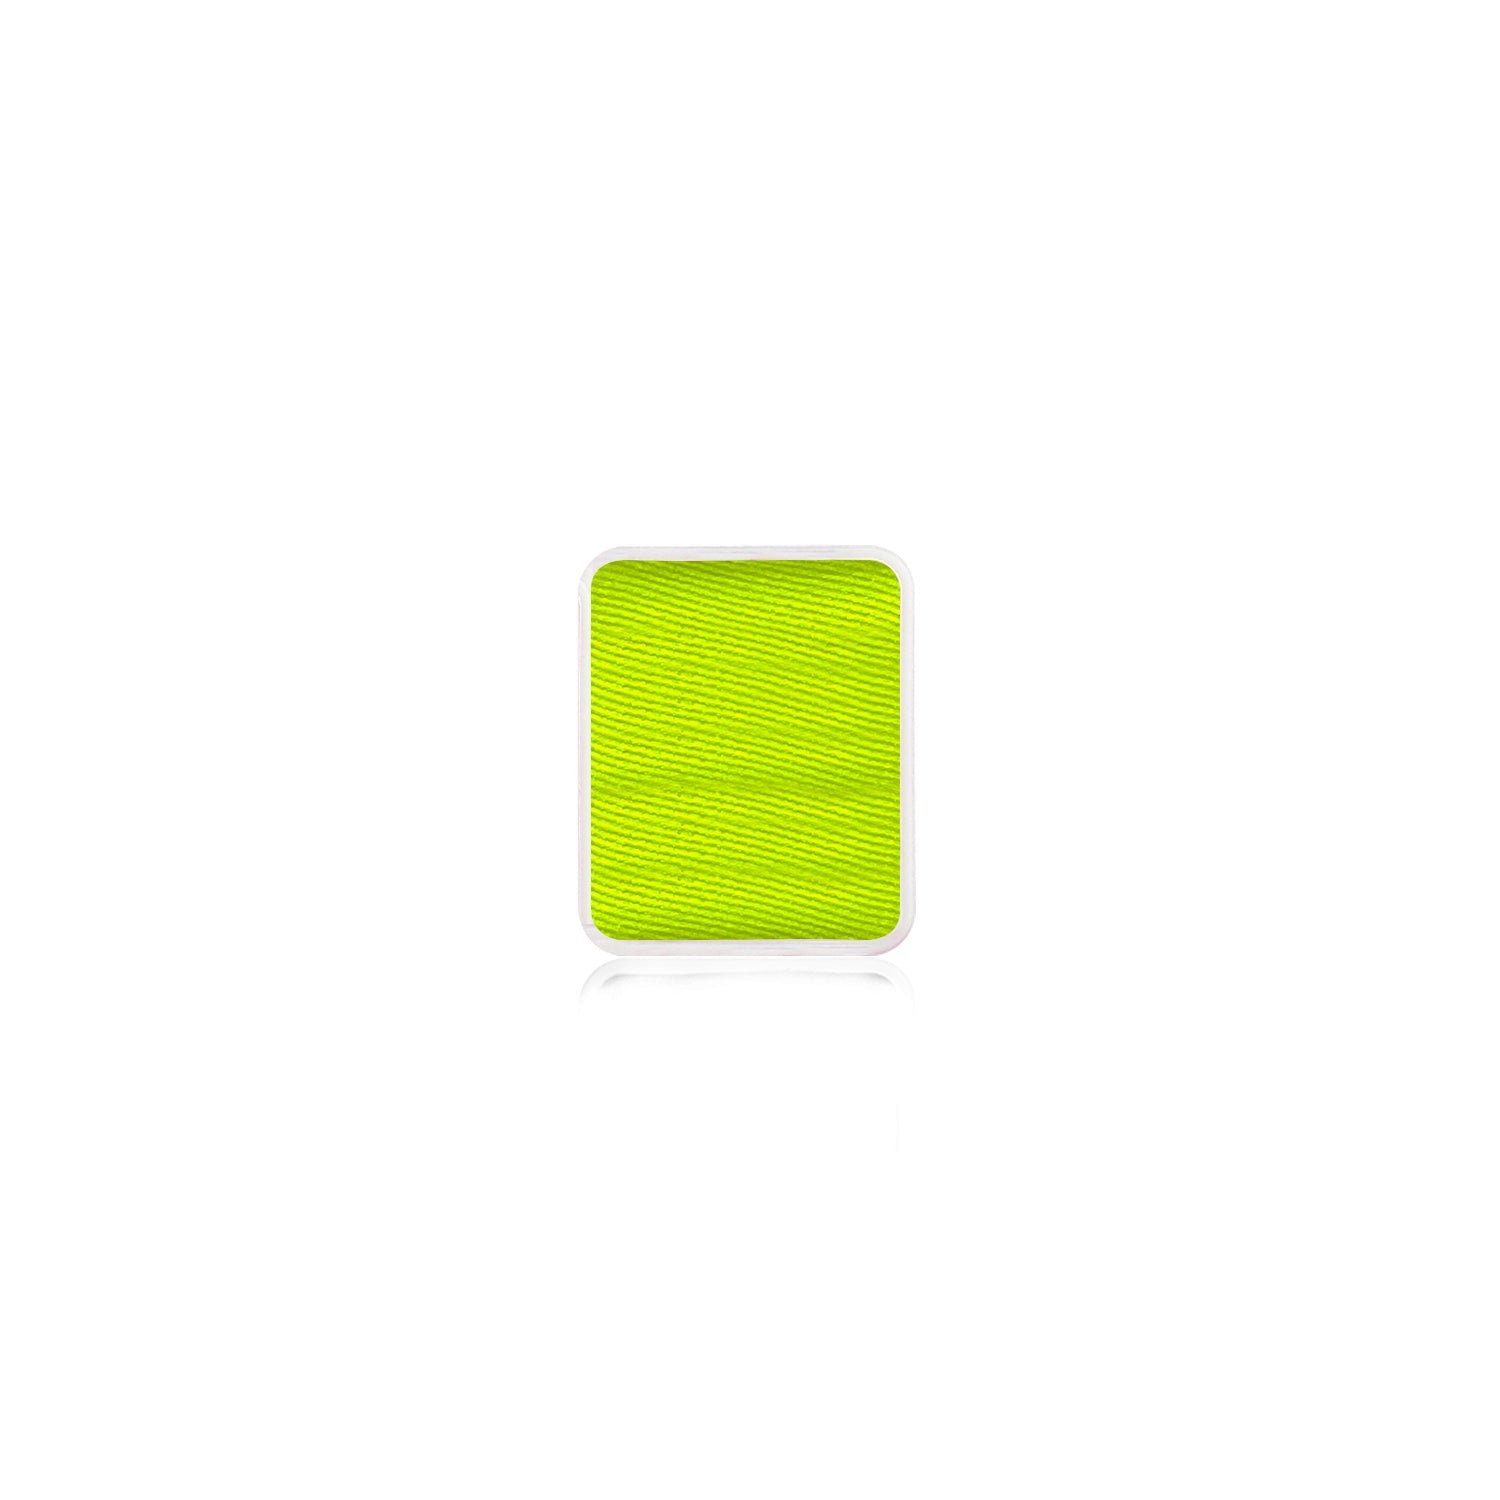 Kraze FX Face Paint Palette Refill - Neon Yellow (0.21 oz/6 gm)